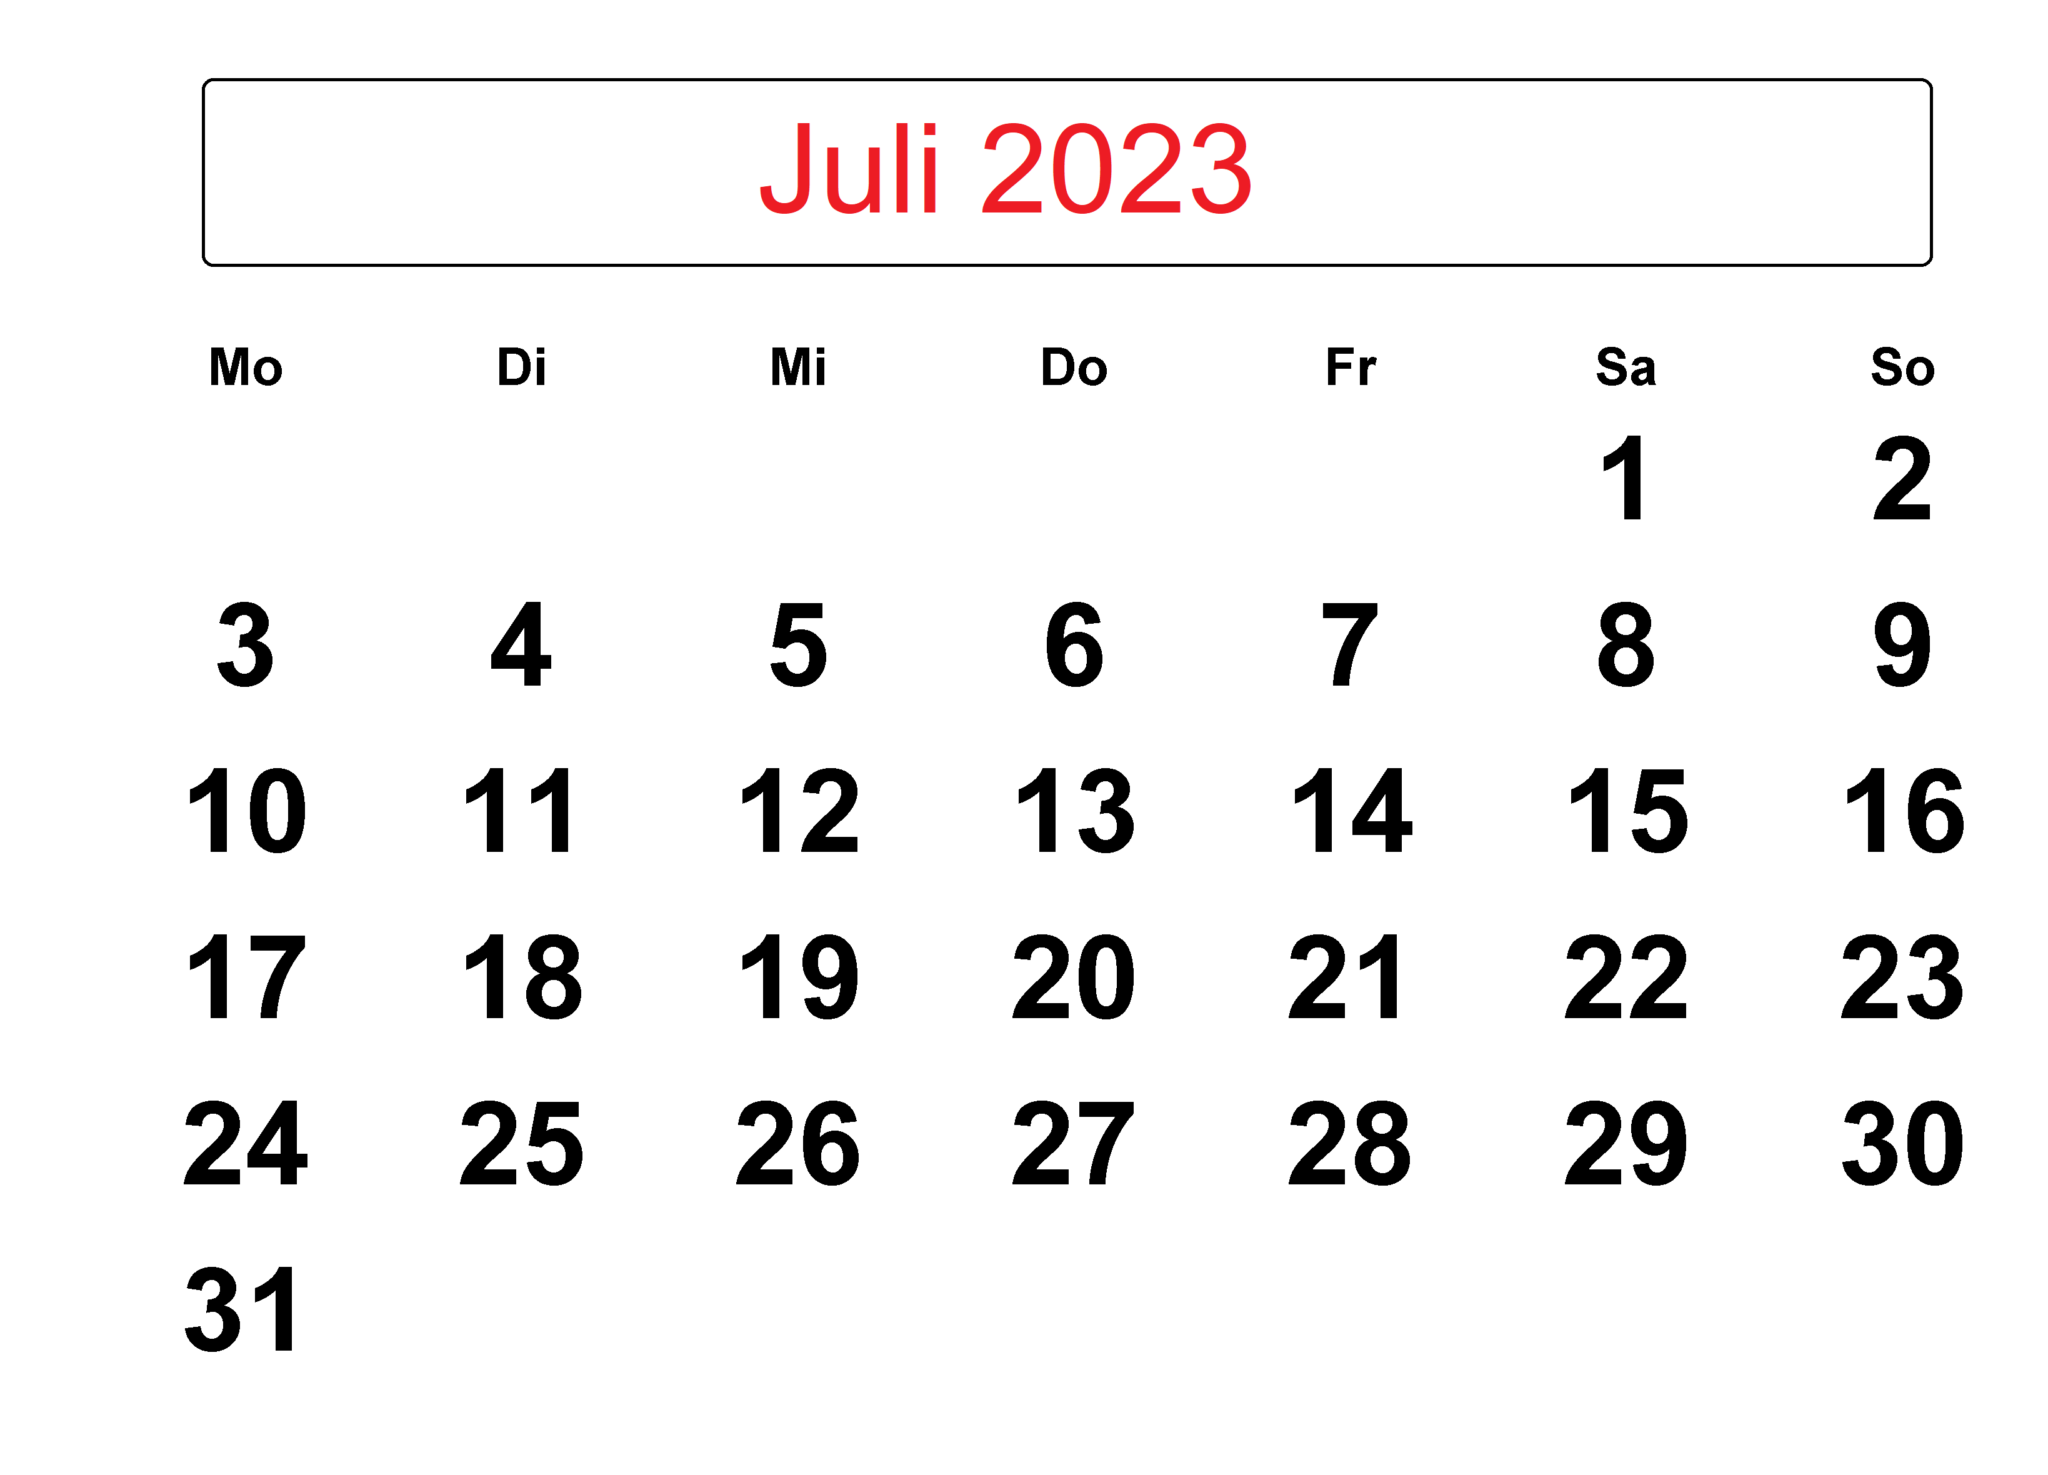 feiertags-juli-2023-kalender-the-beste-kalender